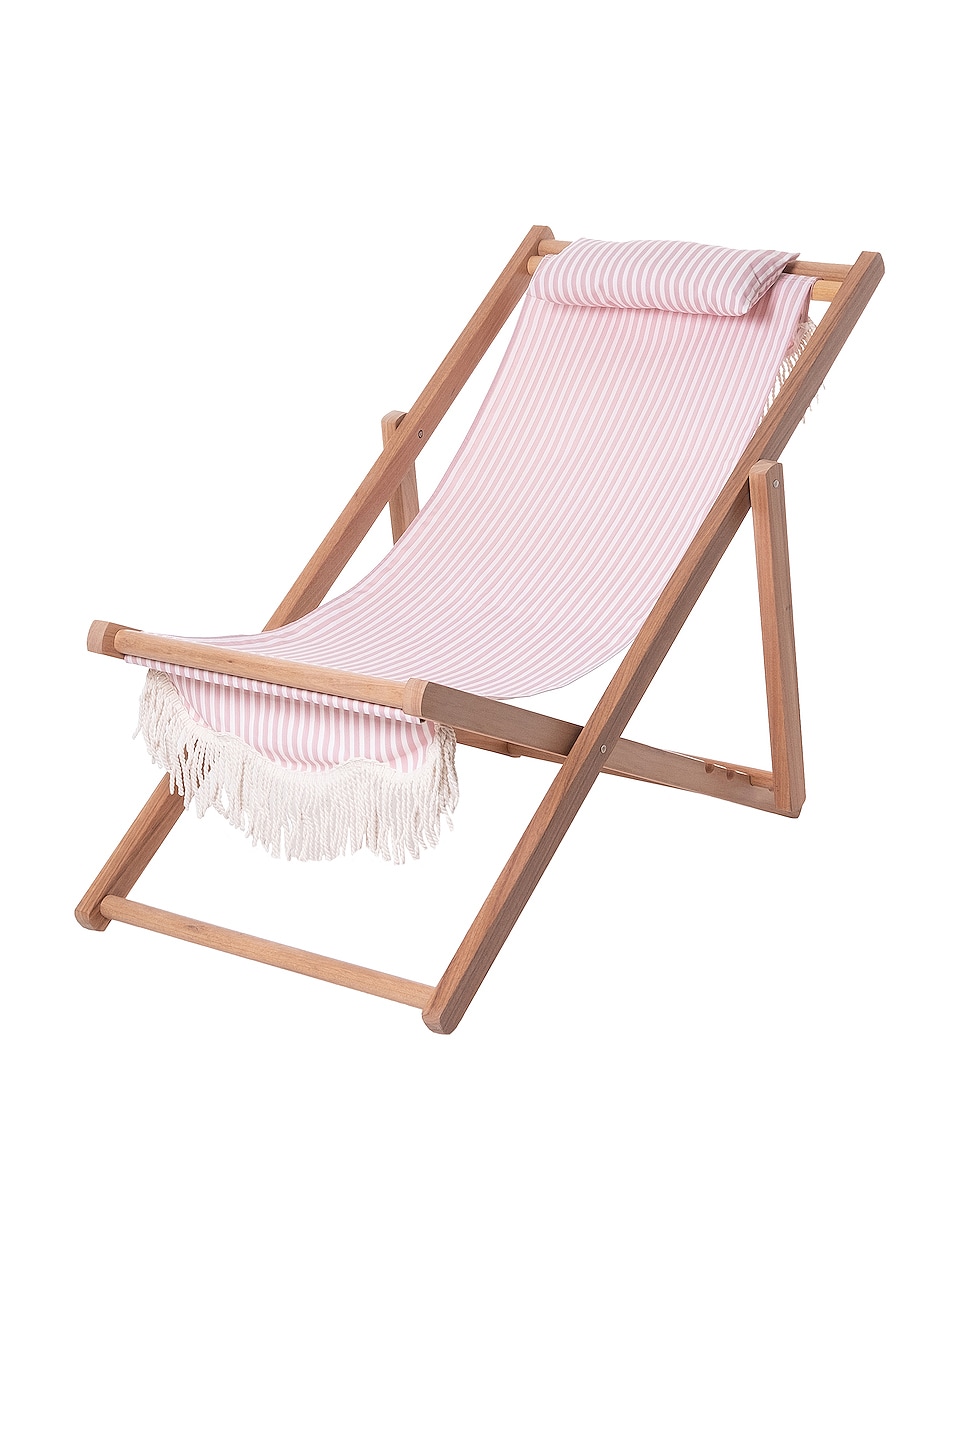 business & pleasure co. Sling Chair Laurens Pink Stripe